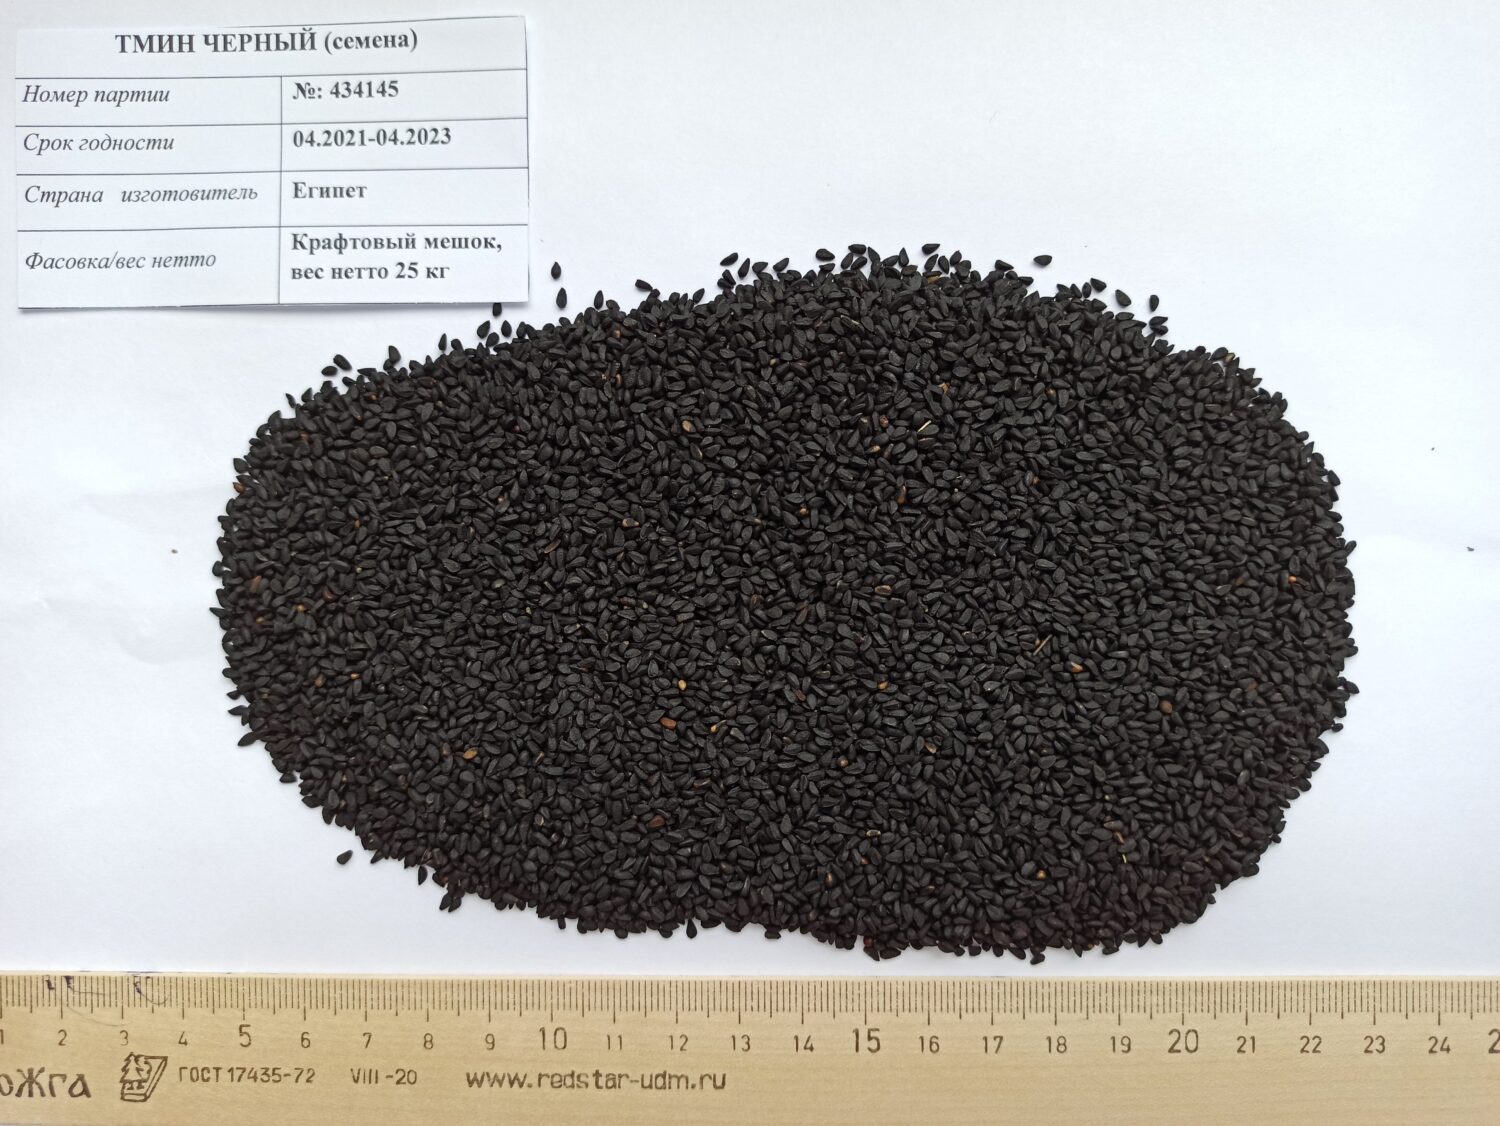 Черный тмин (семена нигеллы) очень высокого качества